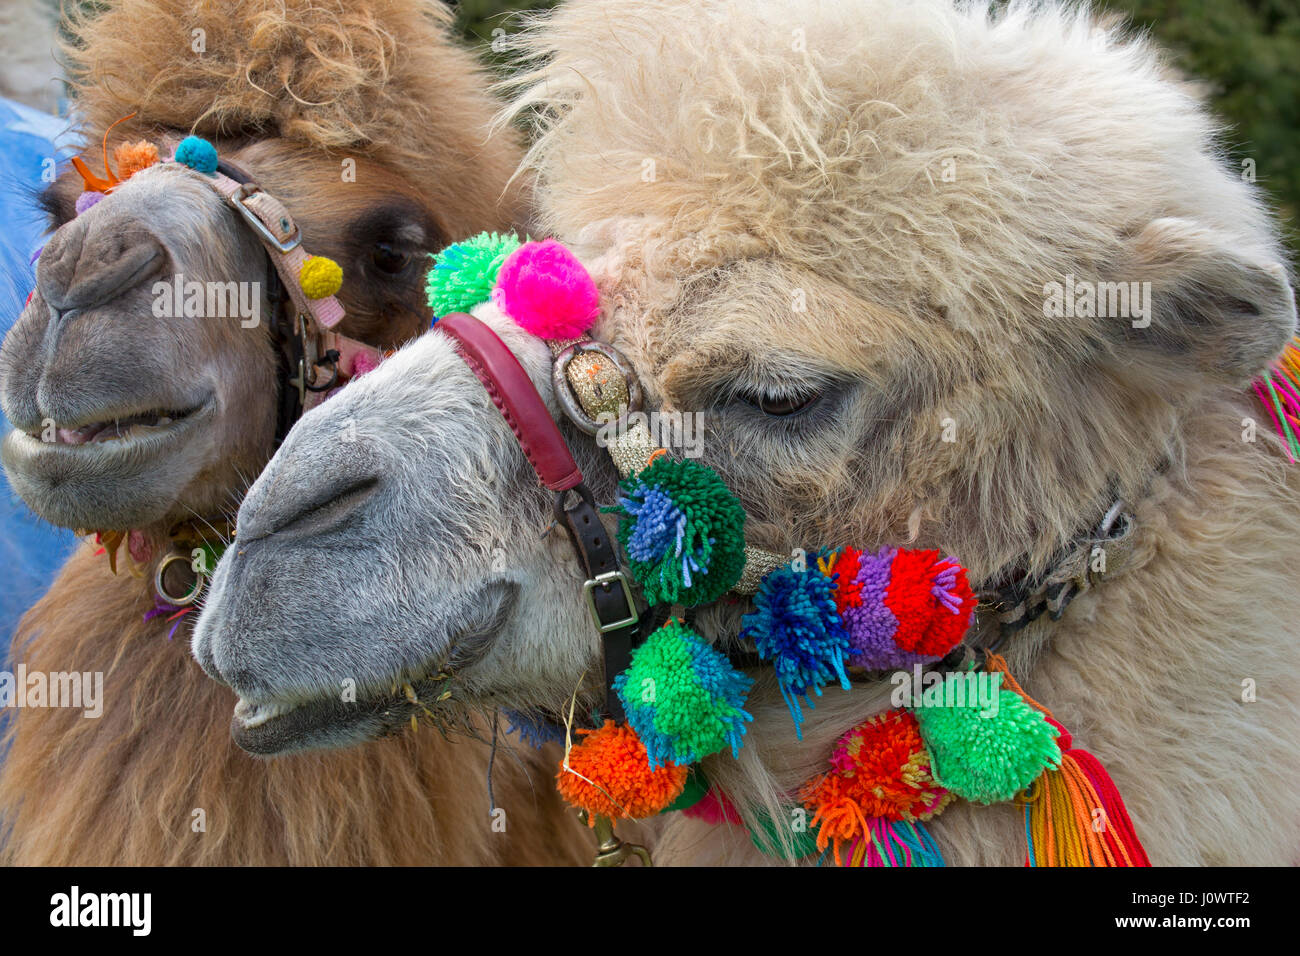 Les chameaux de Bactriane Camelus bactrianus domestique utilisé pour les courses de chameaux Banque D'Images